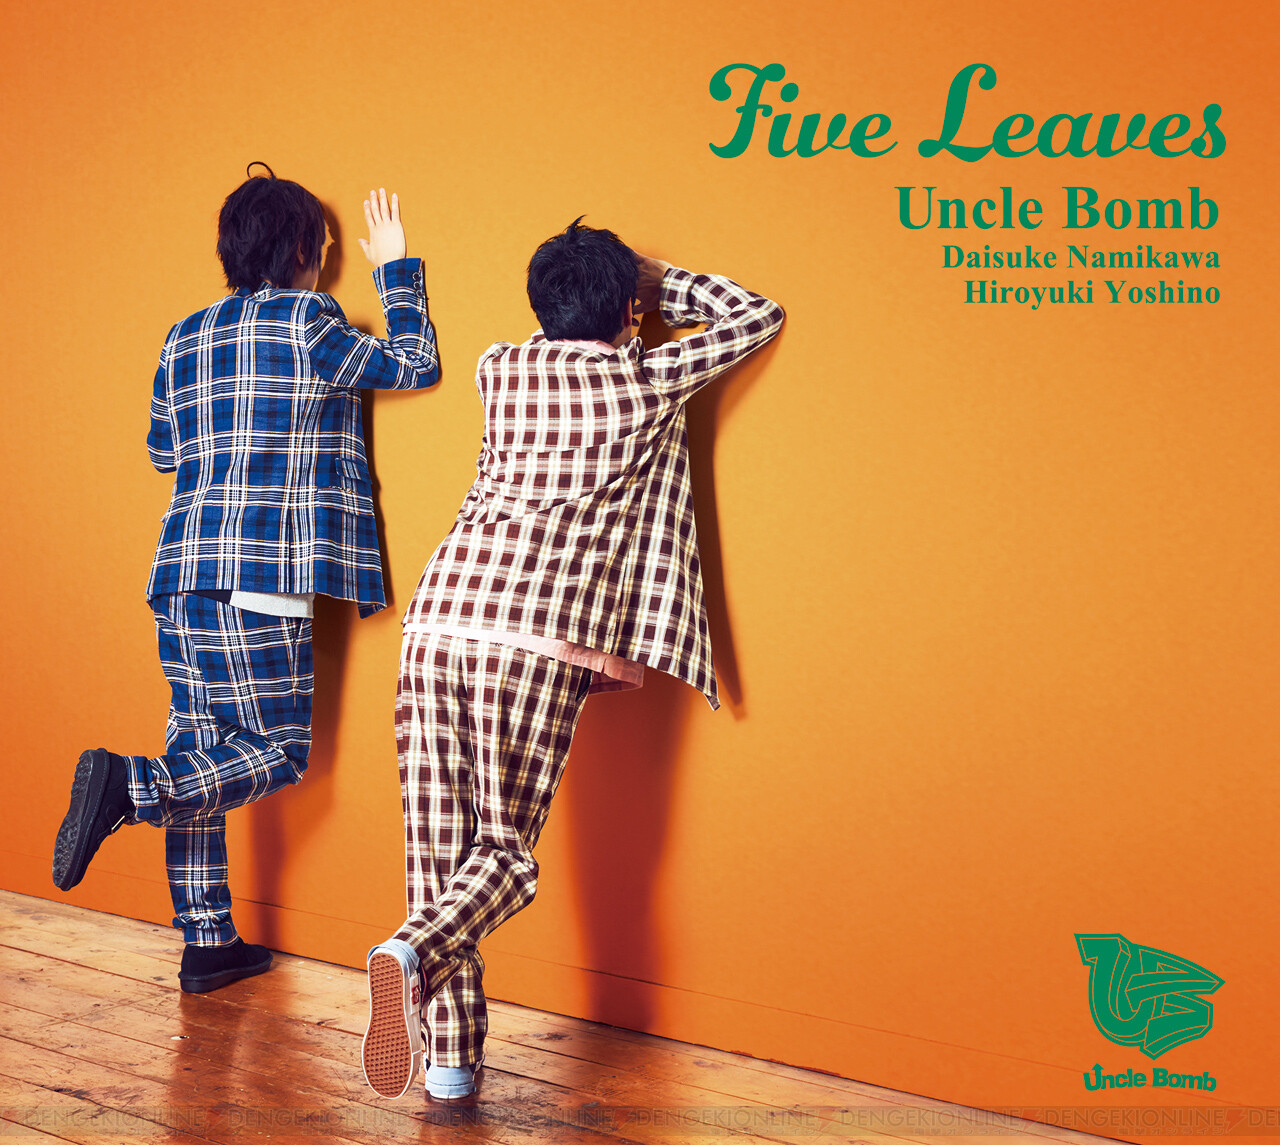 Uncle Bombの5thミニアルバム Five Leaves が1月8日に発売 浪川大輔さんと吉野裕行さんにインタビュー ガルスタオンライン